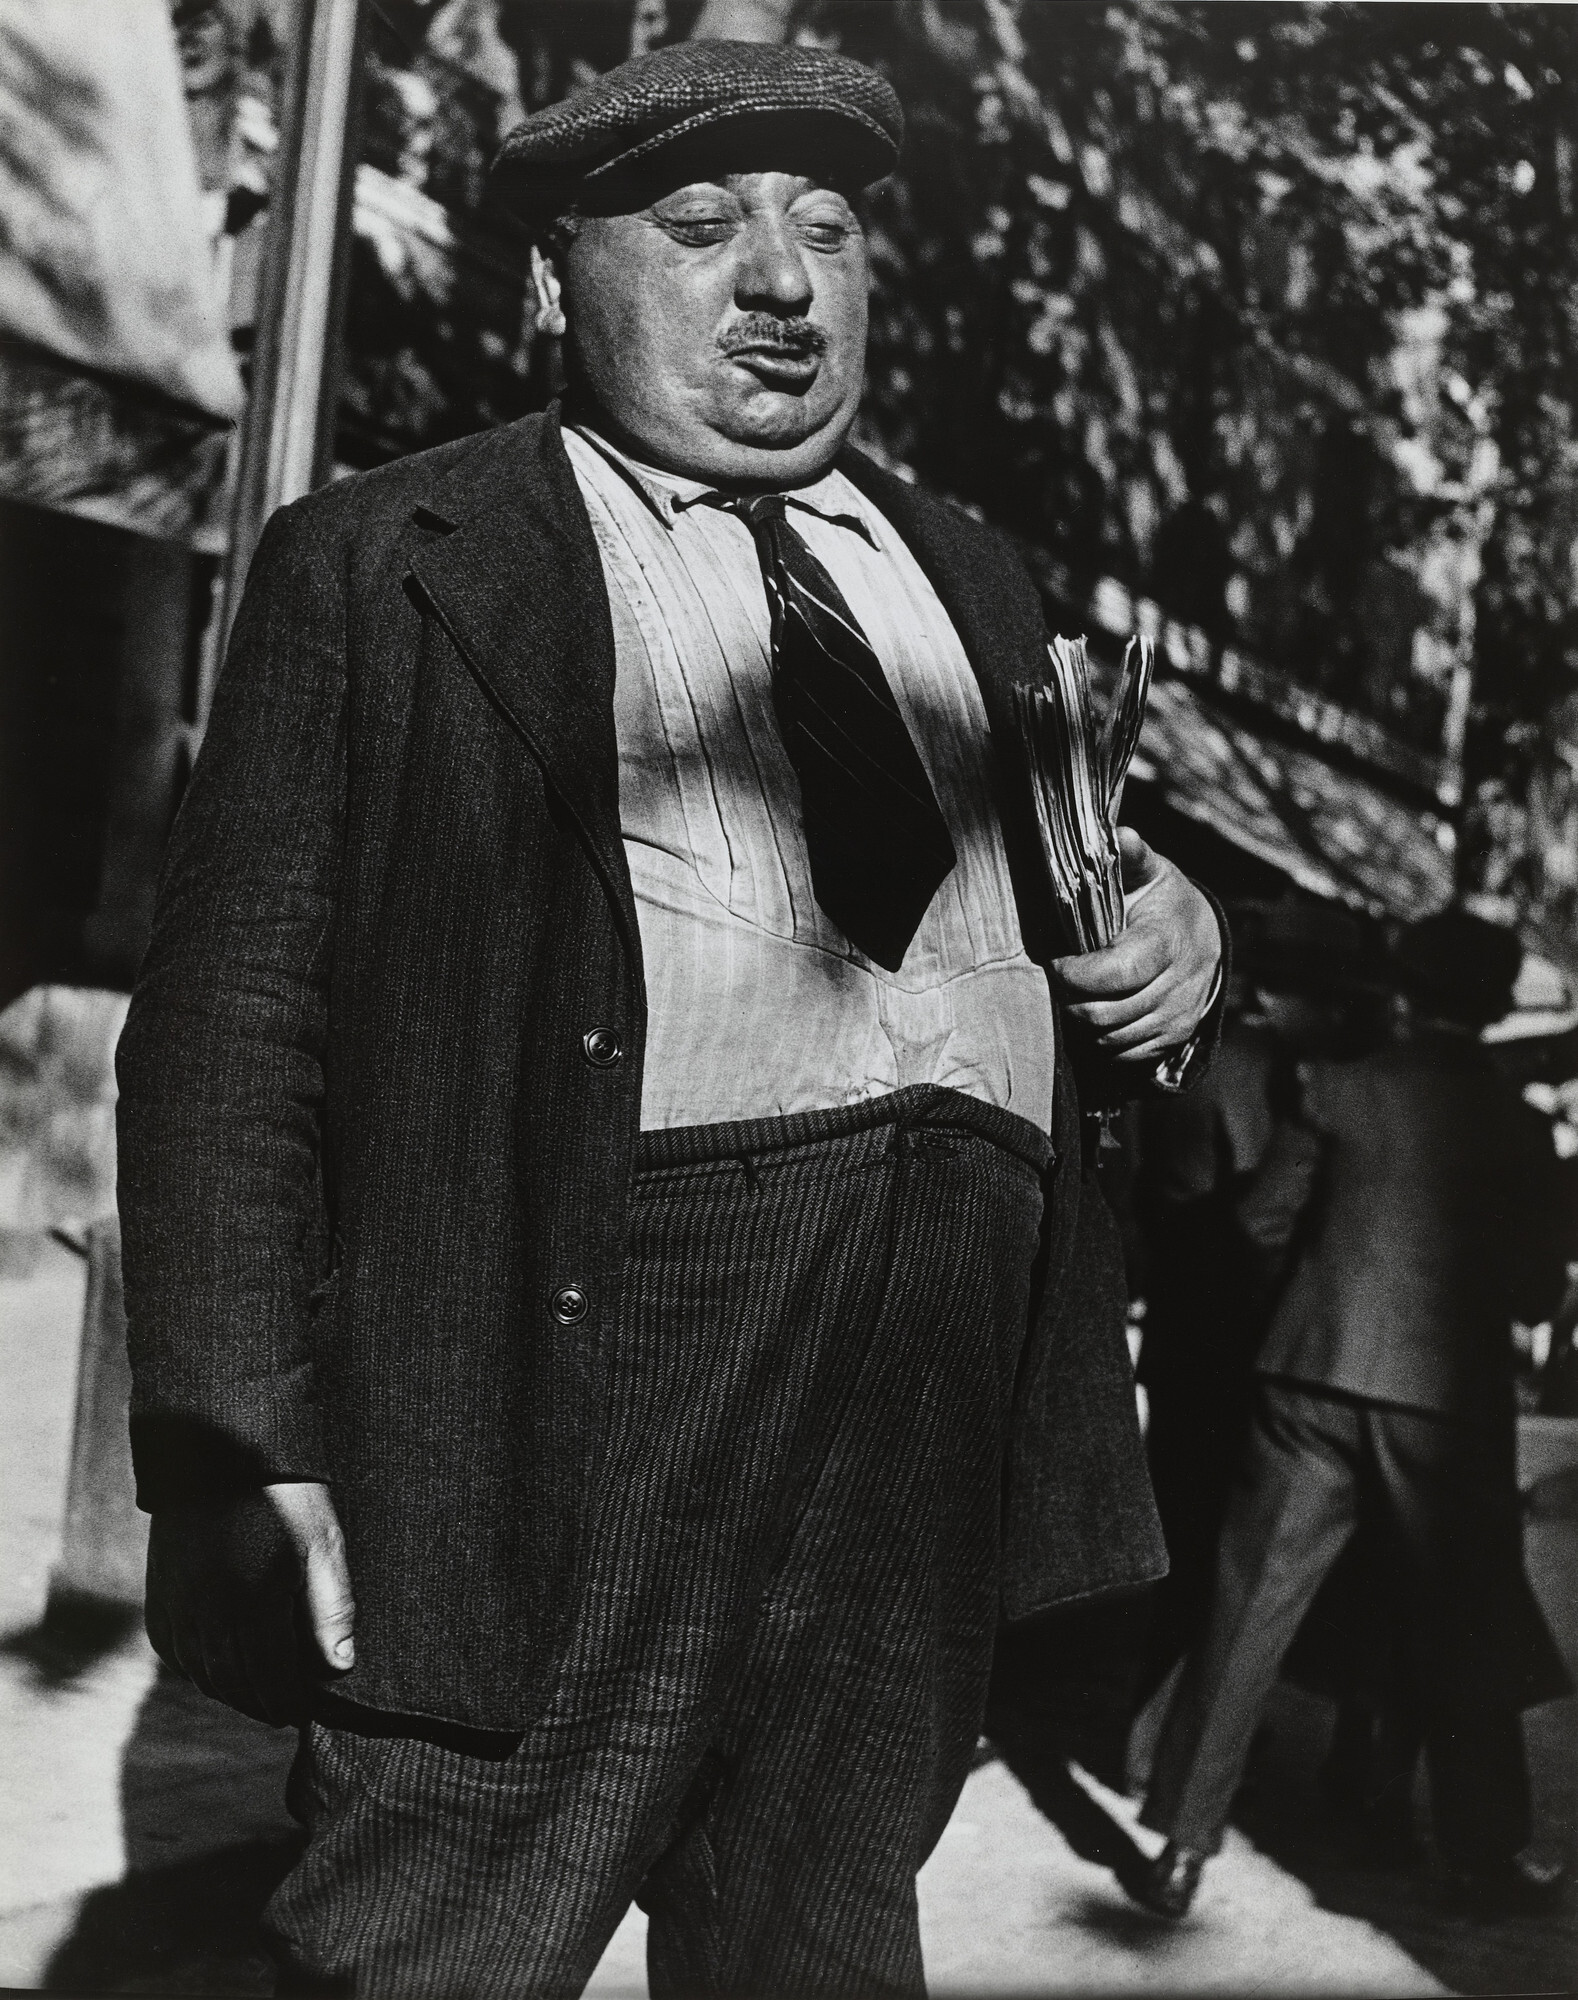 Человек с брошюрами, 1938 год. Фотограф Лизетта Модел